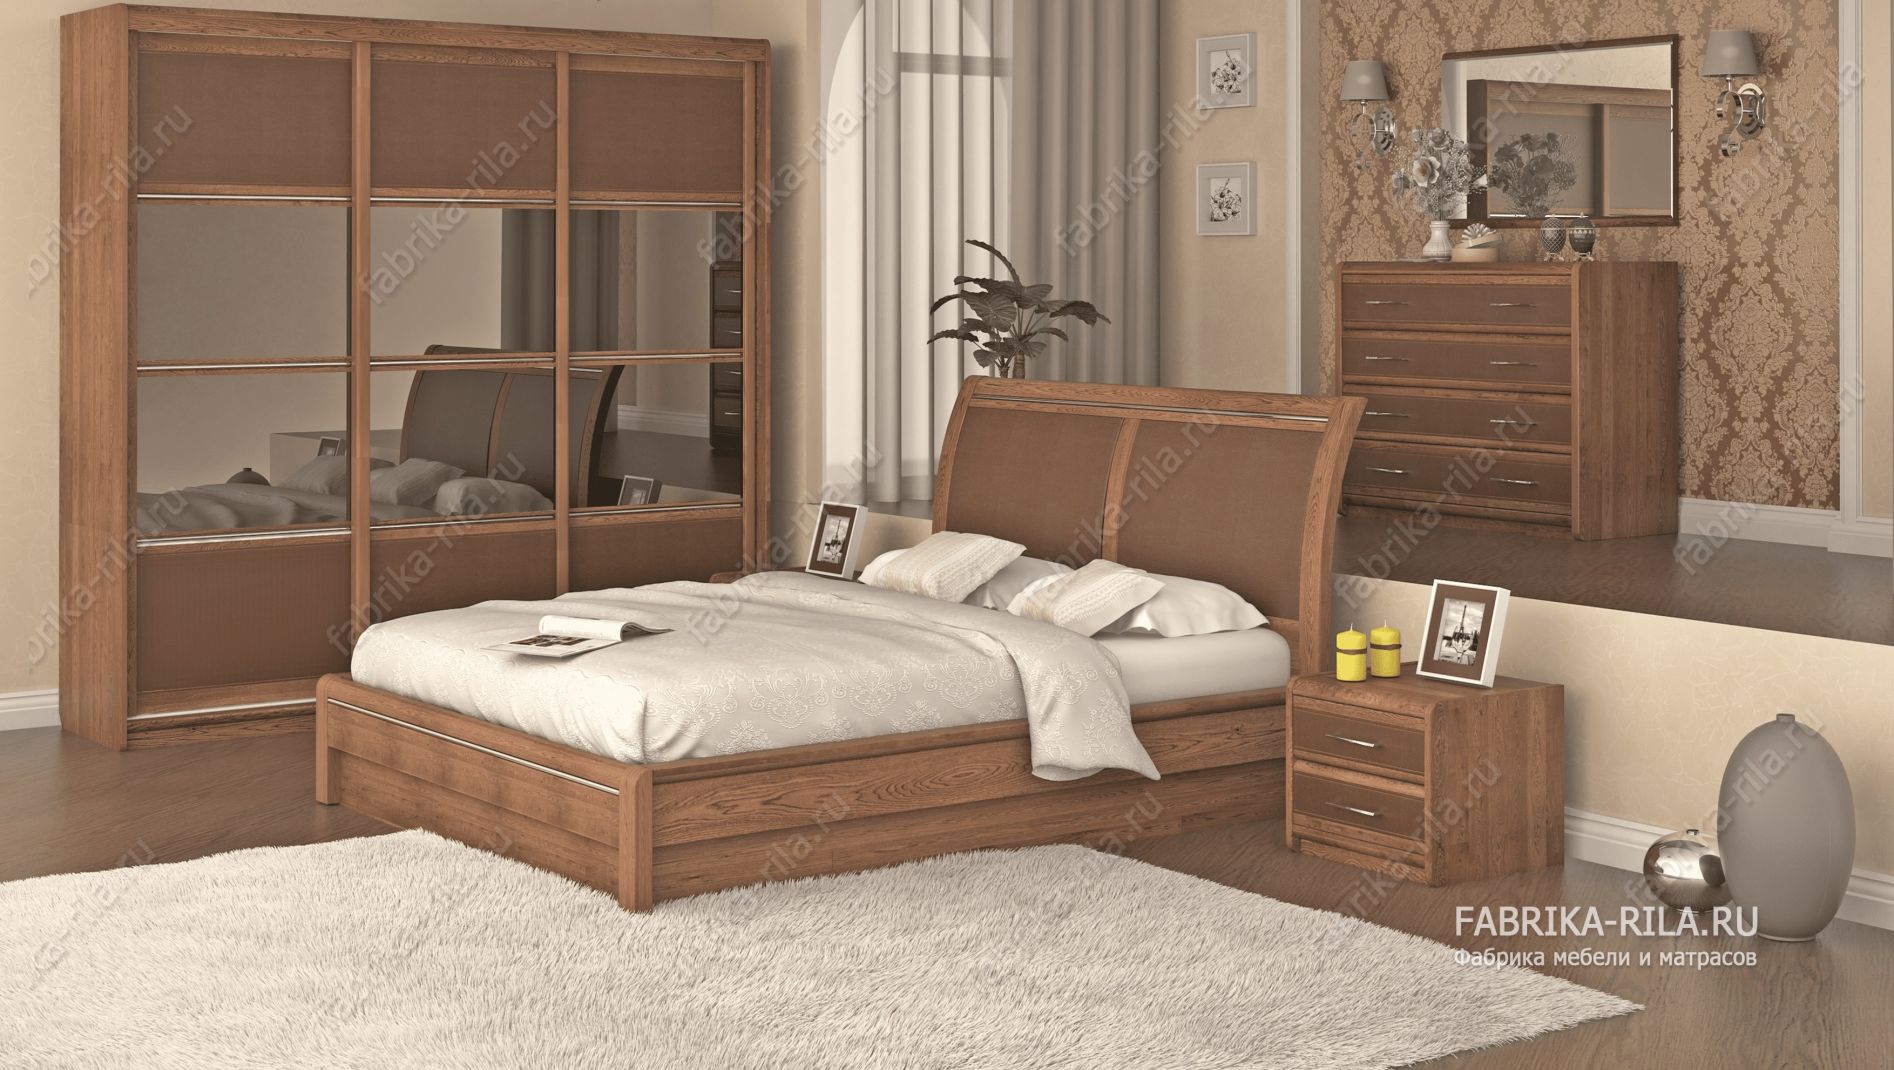 кровать Okaeri 6 см— 140x200 см. из сосны